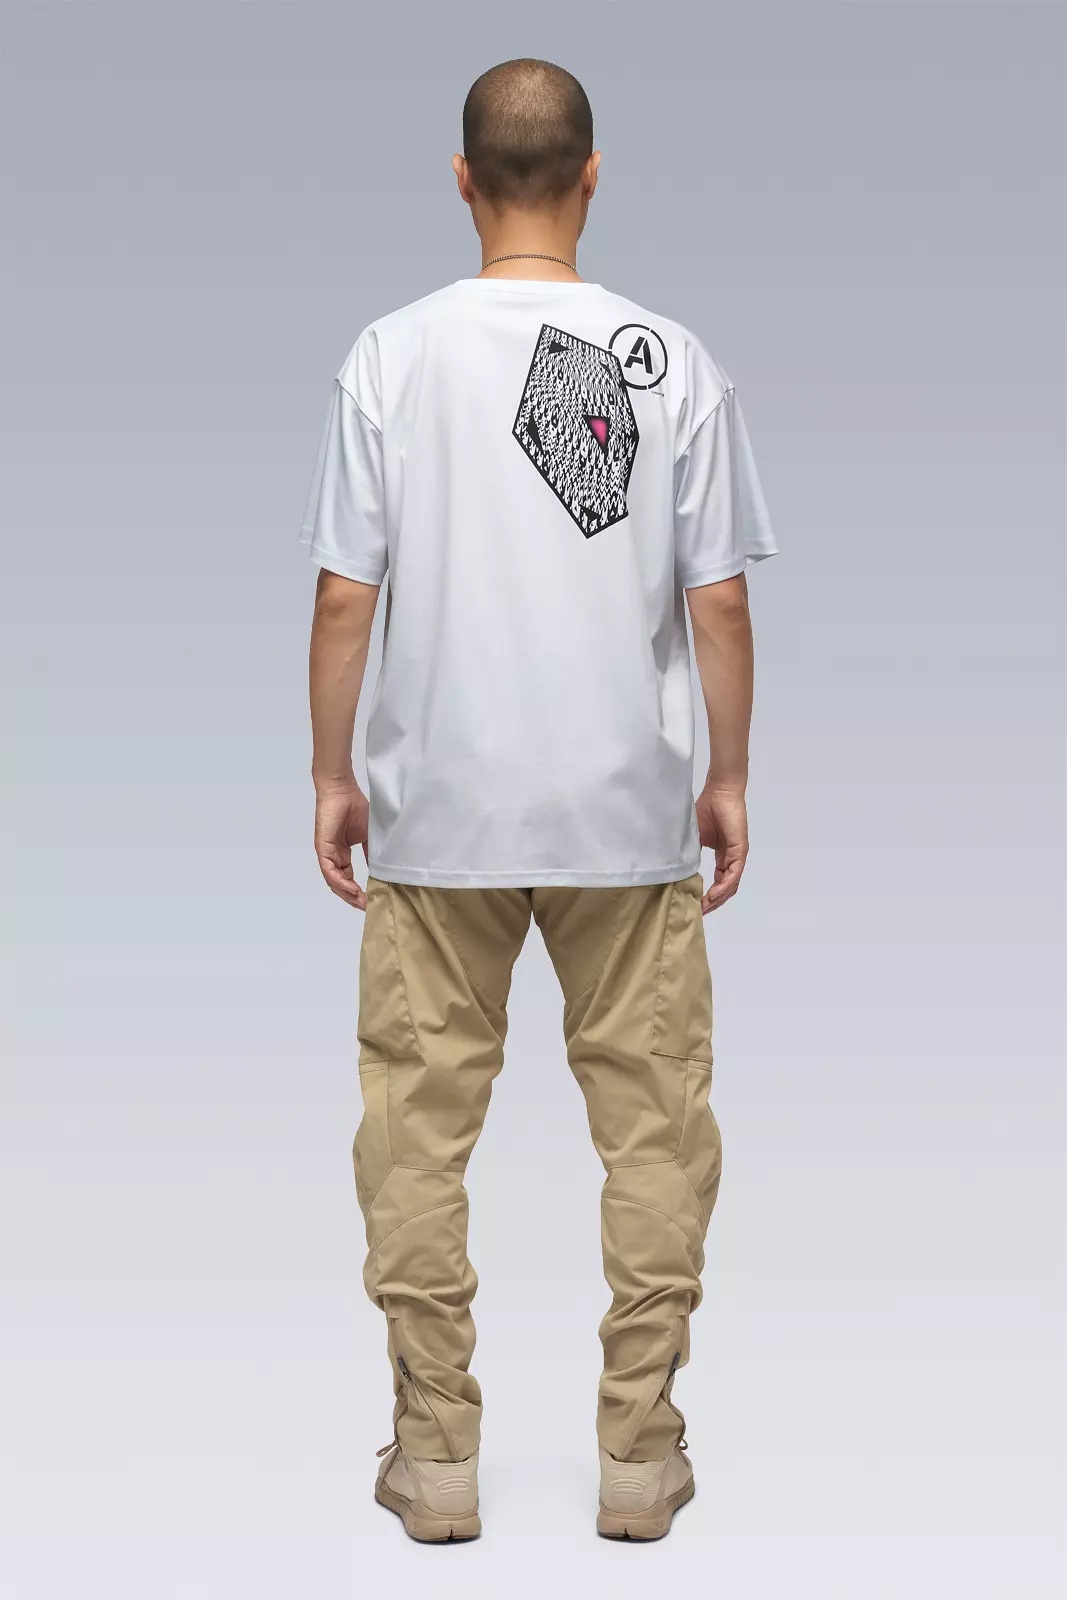 S24-PR-B 100% Cotton Mercerized Short Sleeve T-shirt White - 4